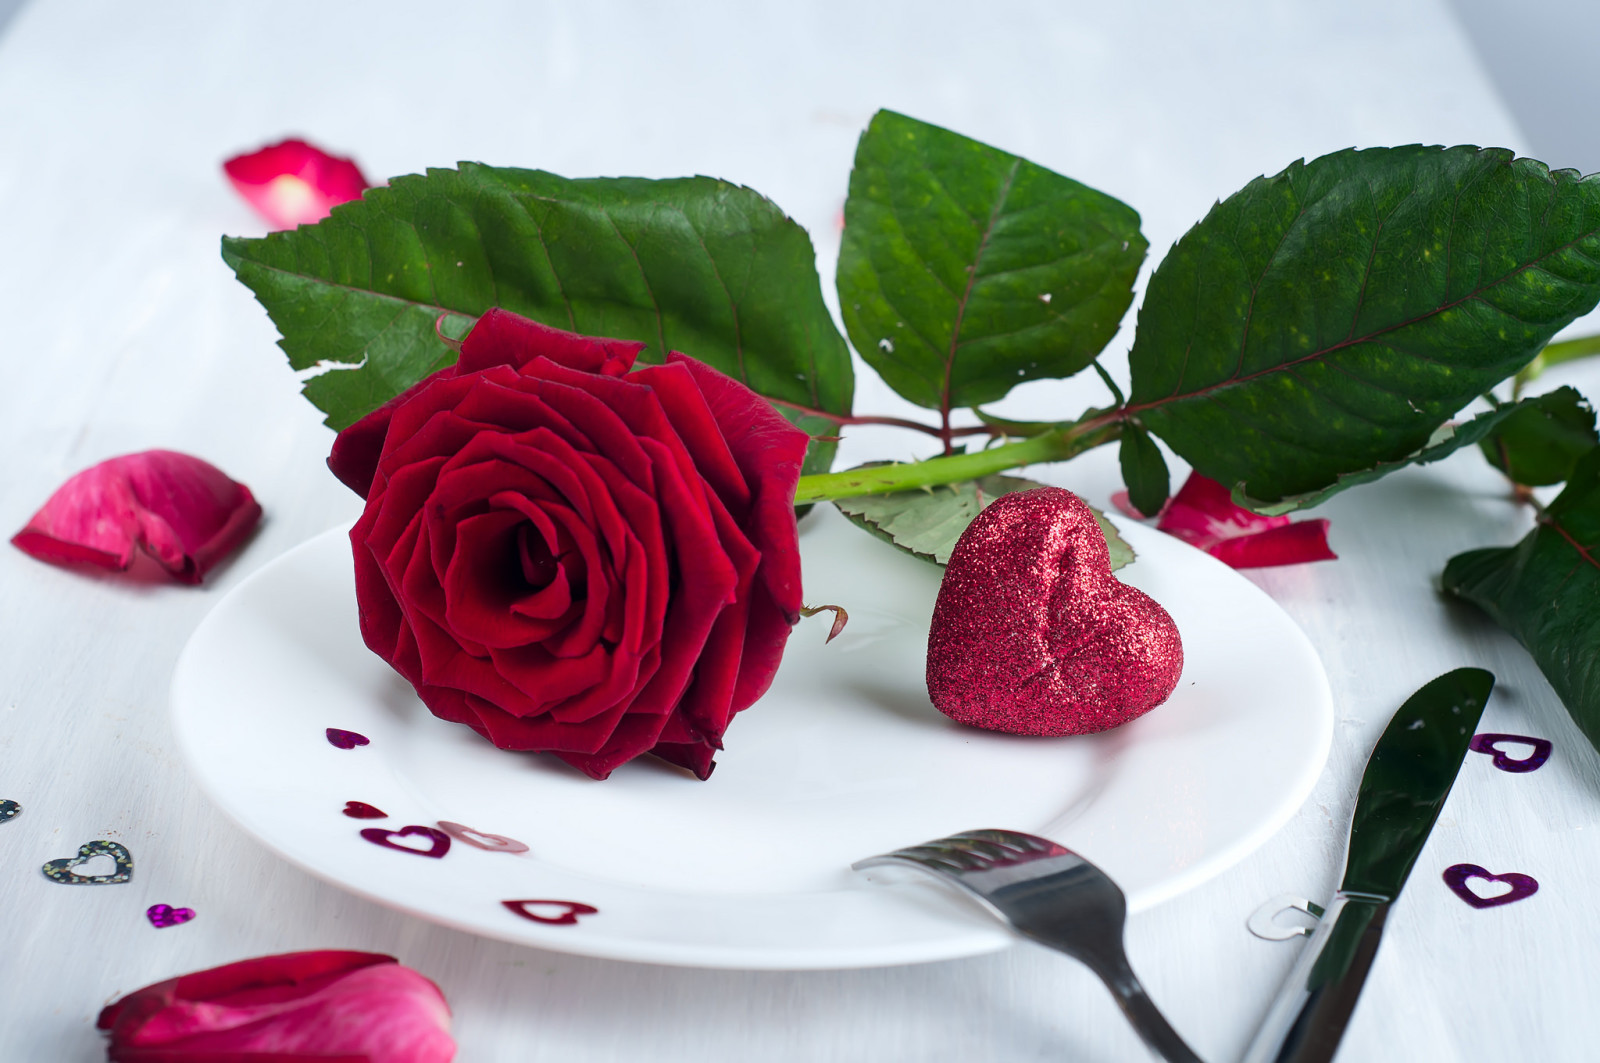 hati, hari Valentine, jantung, mawar, bunga, piring, kelopak